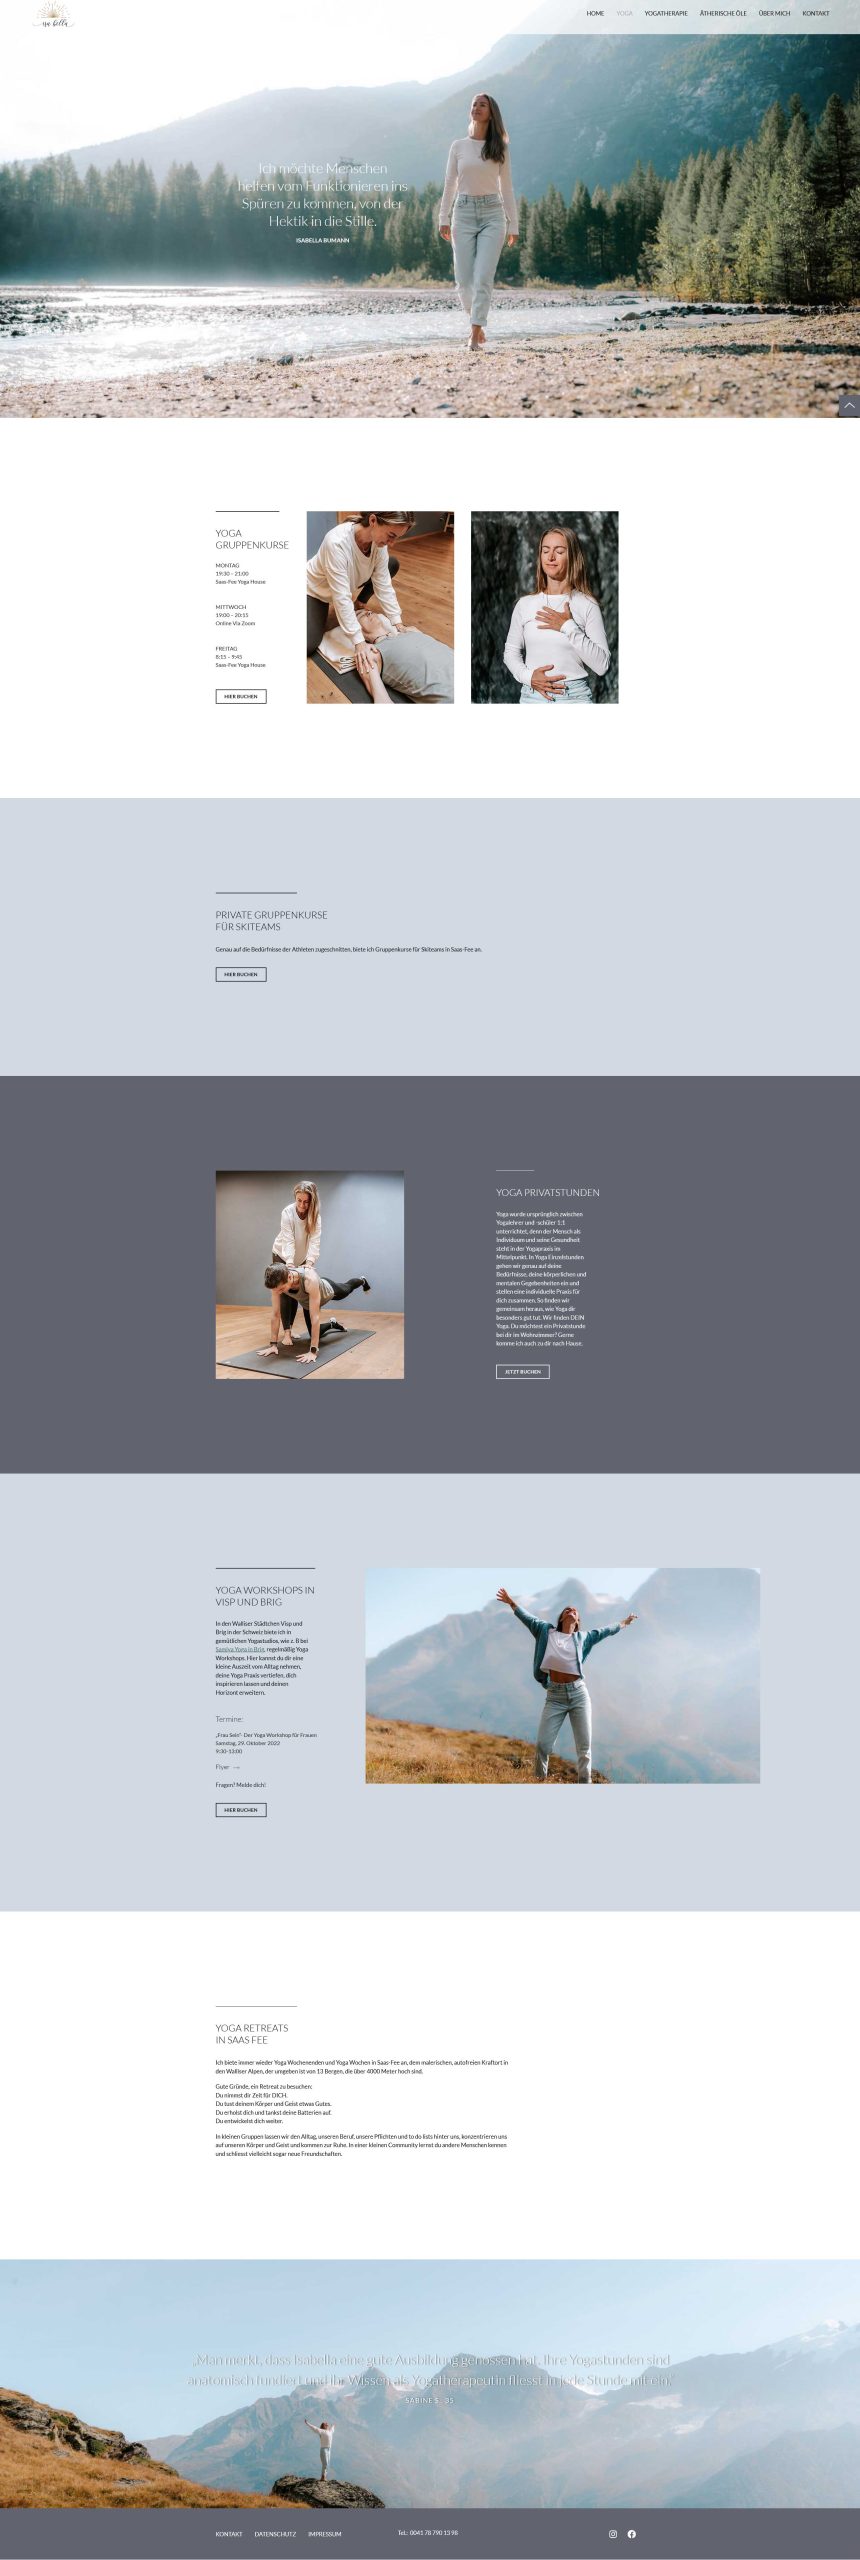 Webdesign: Kategorie Yoga auf der Website für eine Yogatherapeutin aus Saas-Fee in der Schweiz.